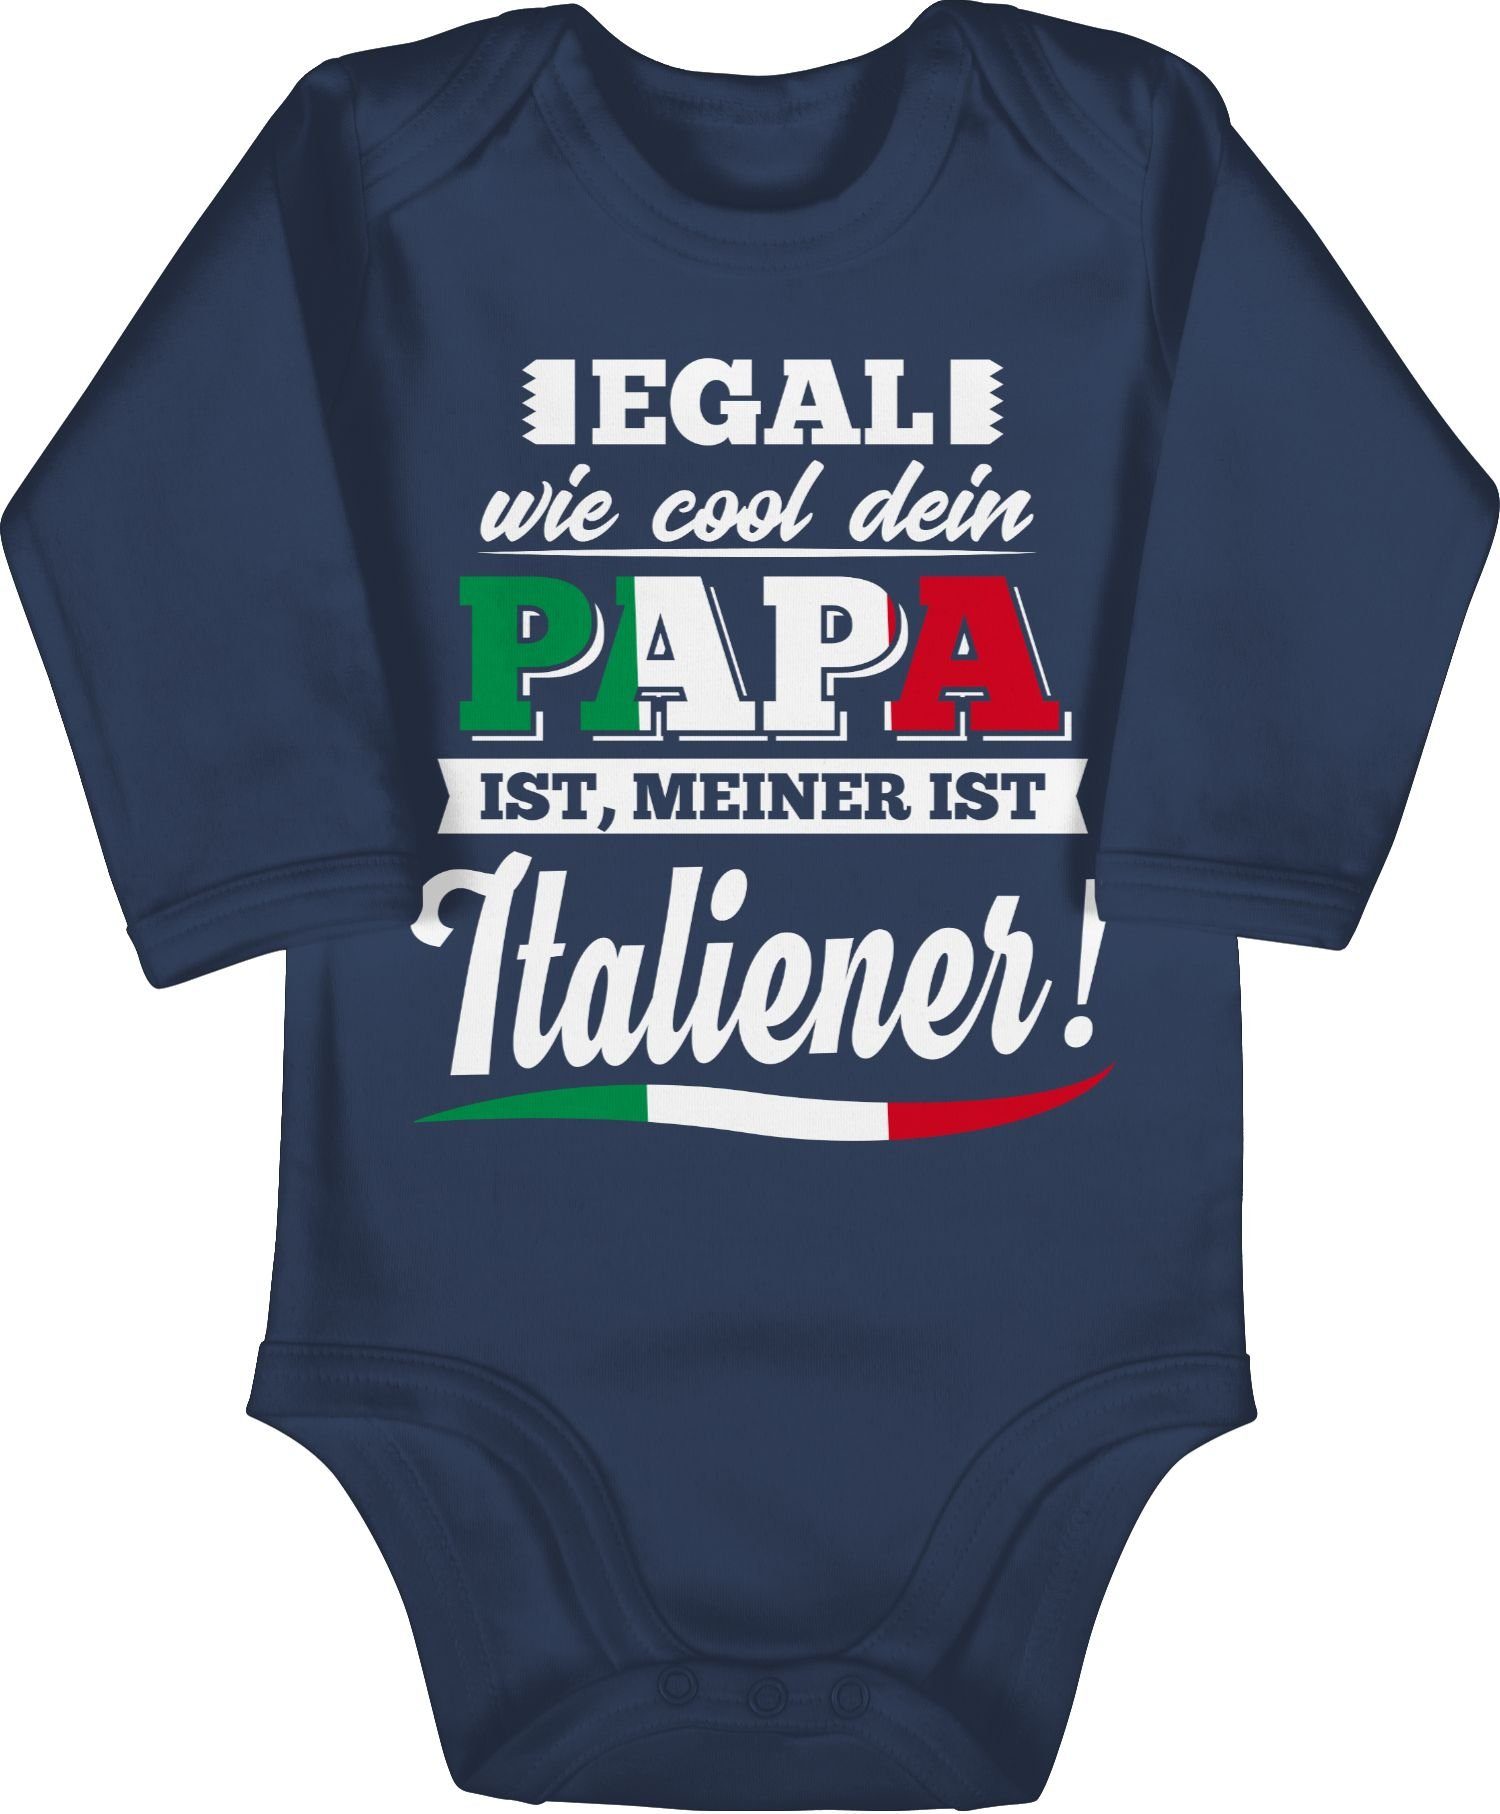 Baby Egal Cool dein Shirtbody ist Navy Papa Blau wie Italiener Sprüche 2 Shirtracer meiner